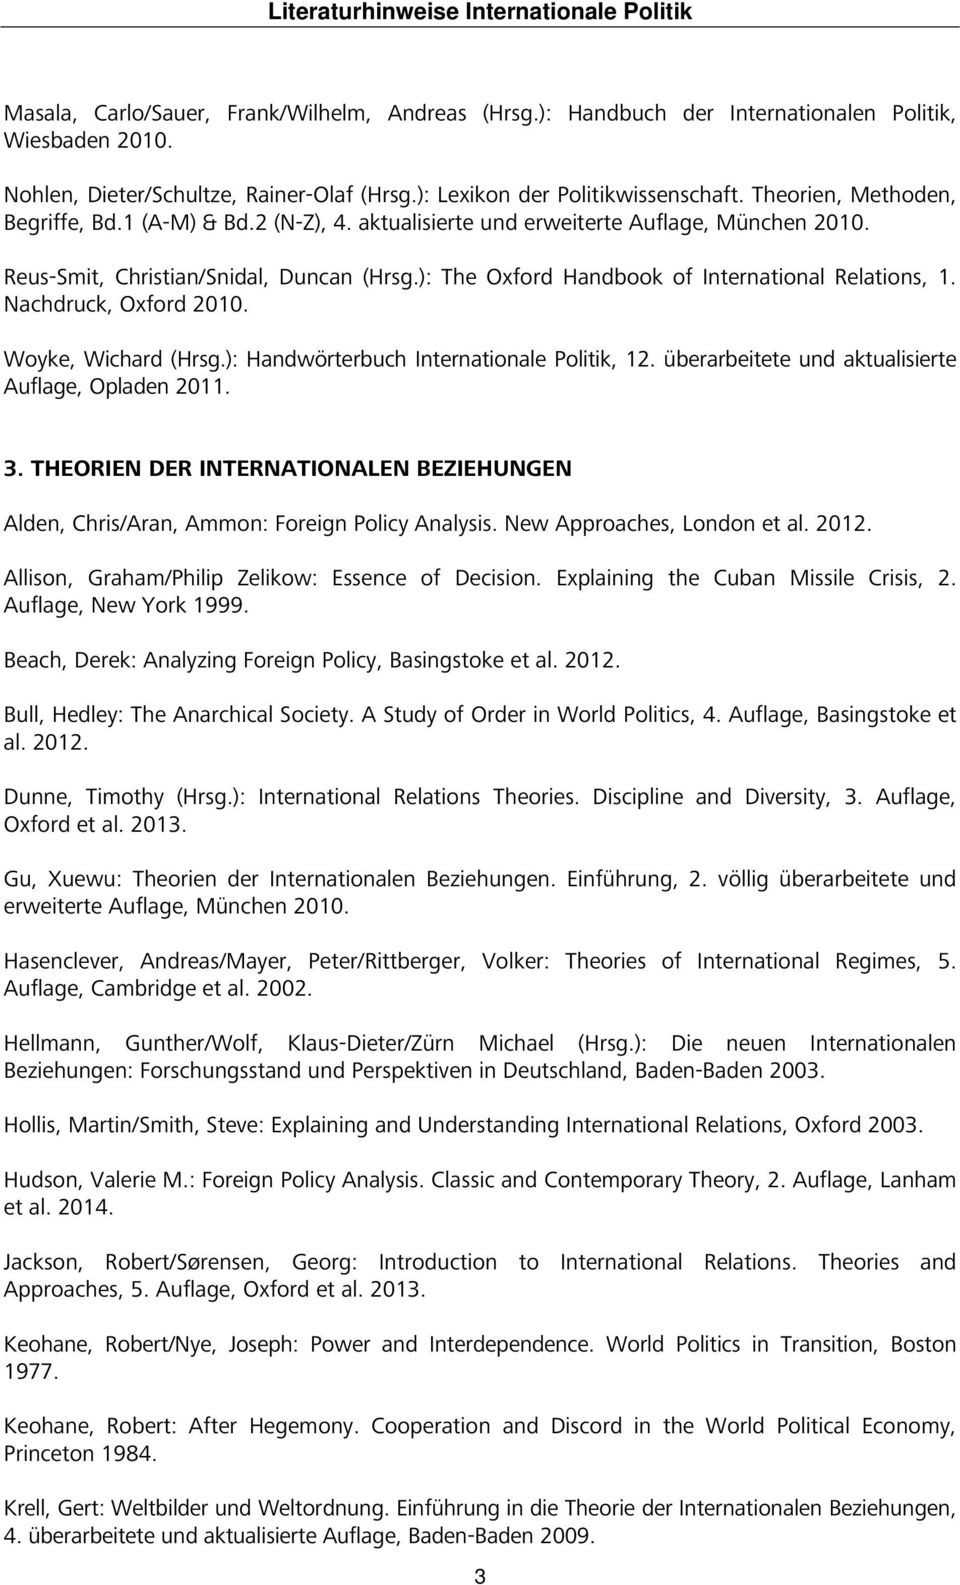 ): The Oxford Handbook of International Relations, 1. Nachdruck, Oxford 2010. Woyke, Wichard (Hrsg.): Handwörterbuch Internationale Politik, 12. überarbeitete und aktualisierte Auflage, Opladen 2011.